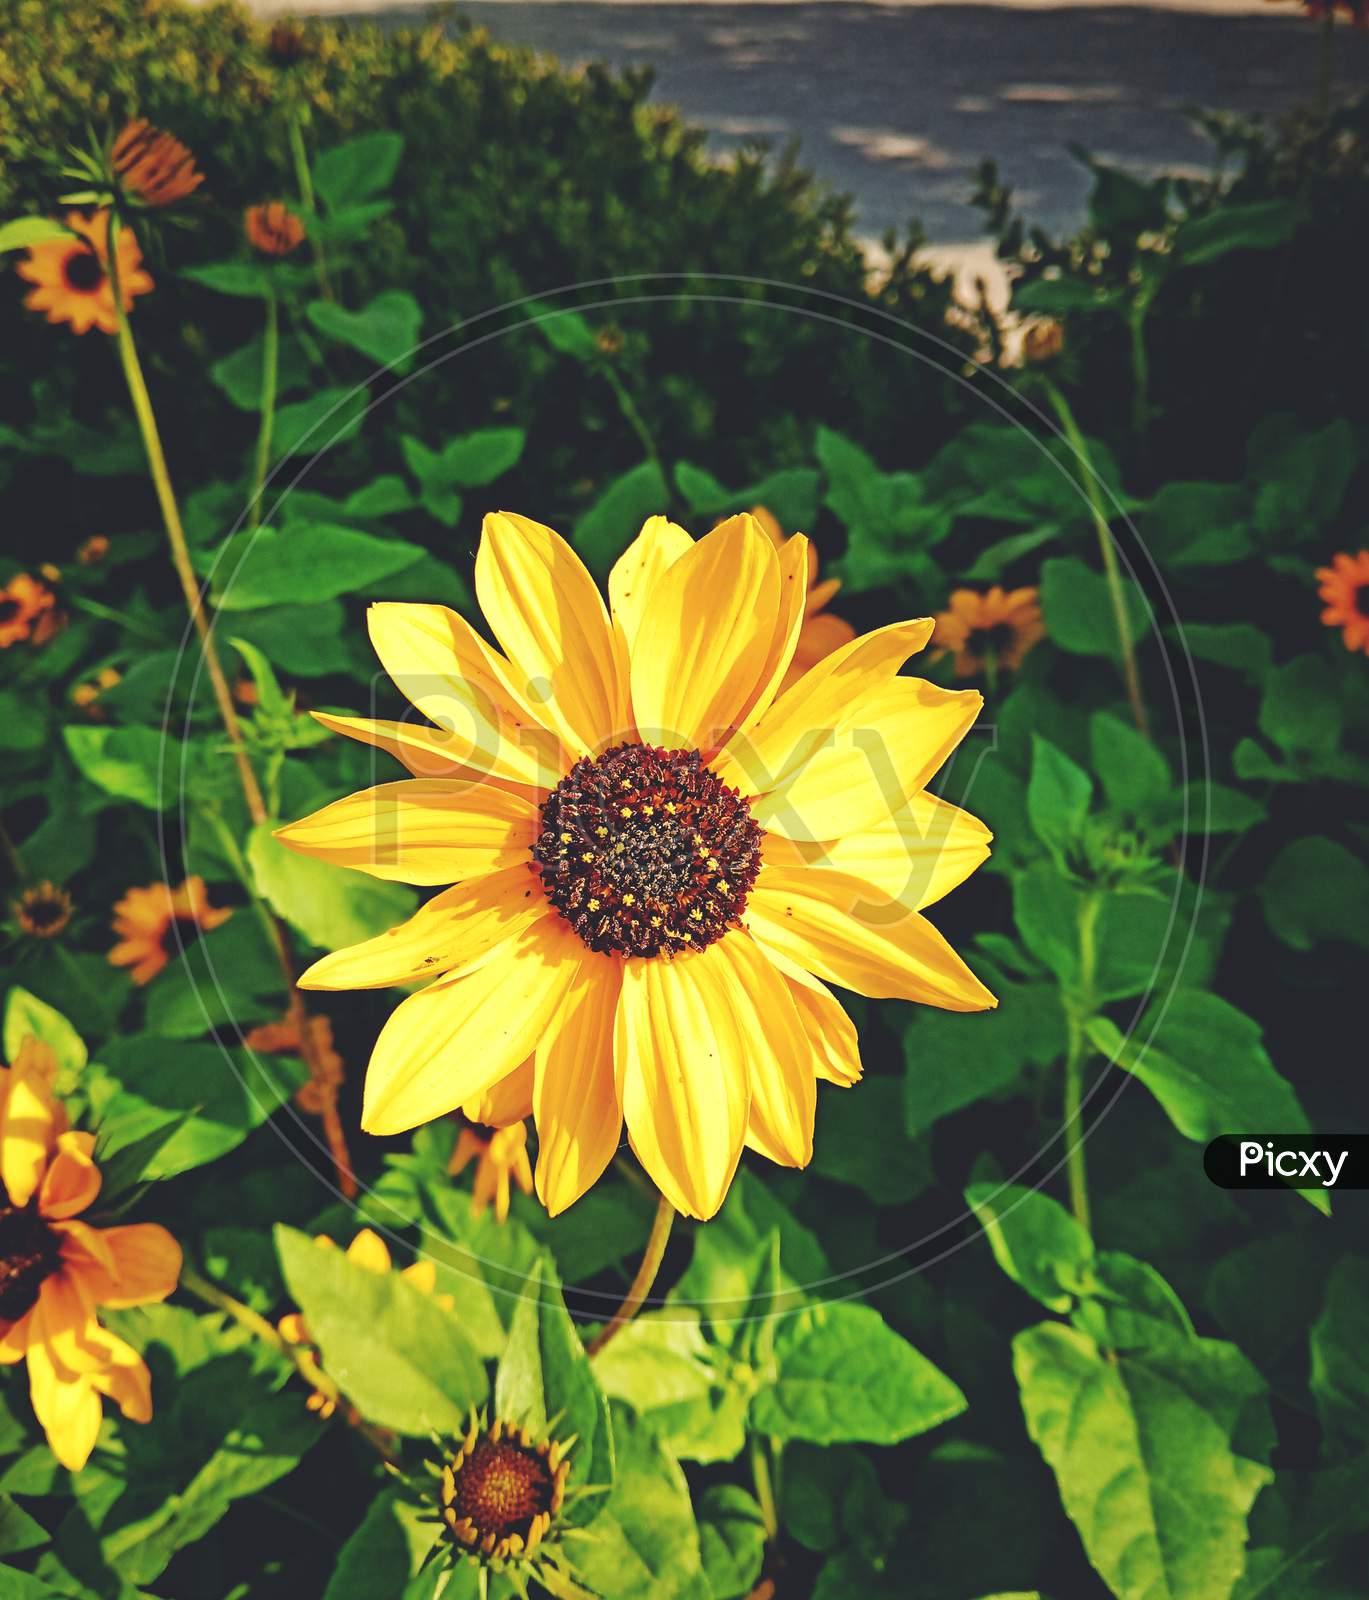 sunflower image, yellow flower, nature